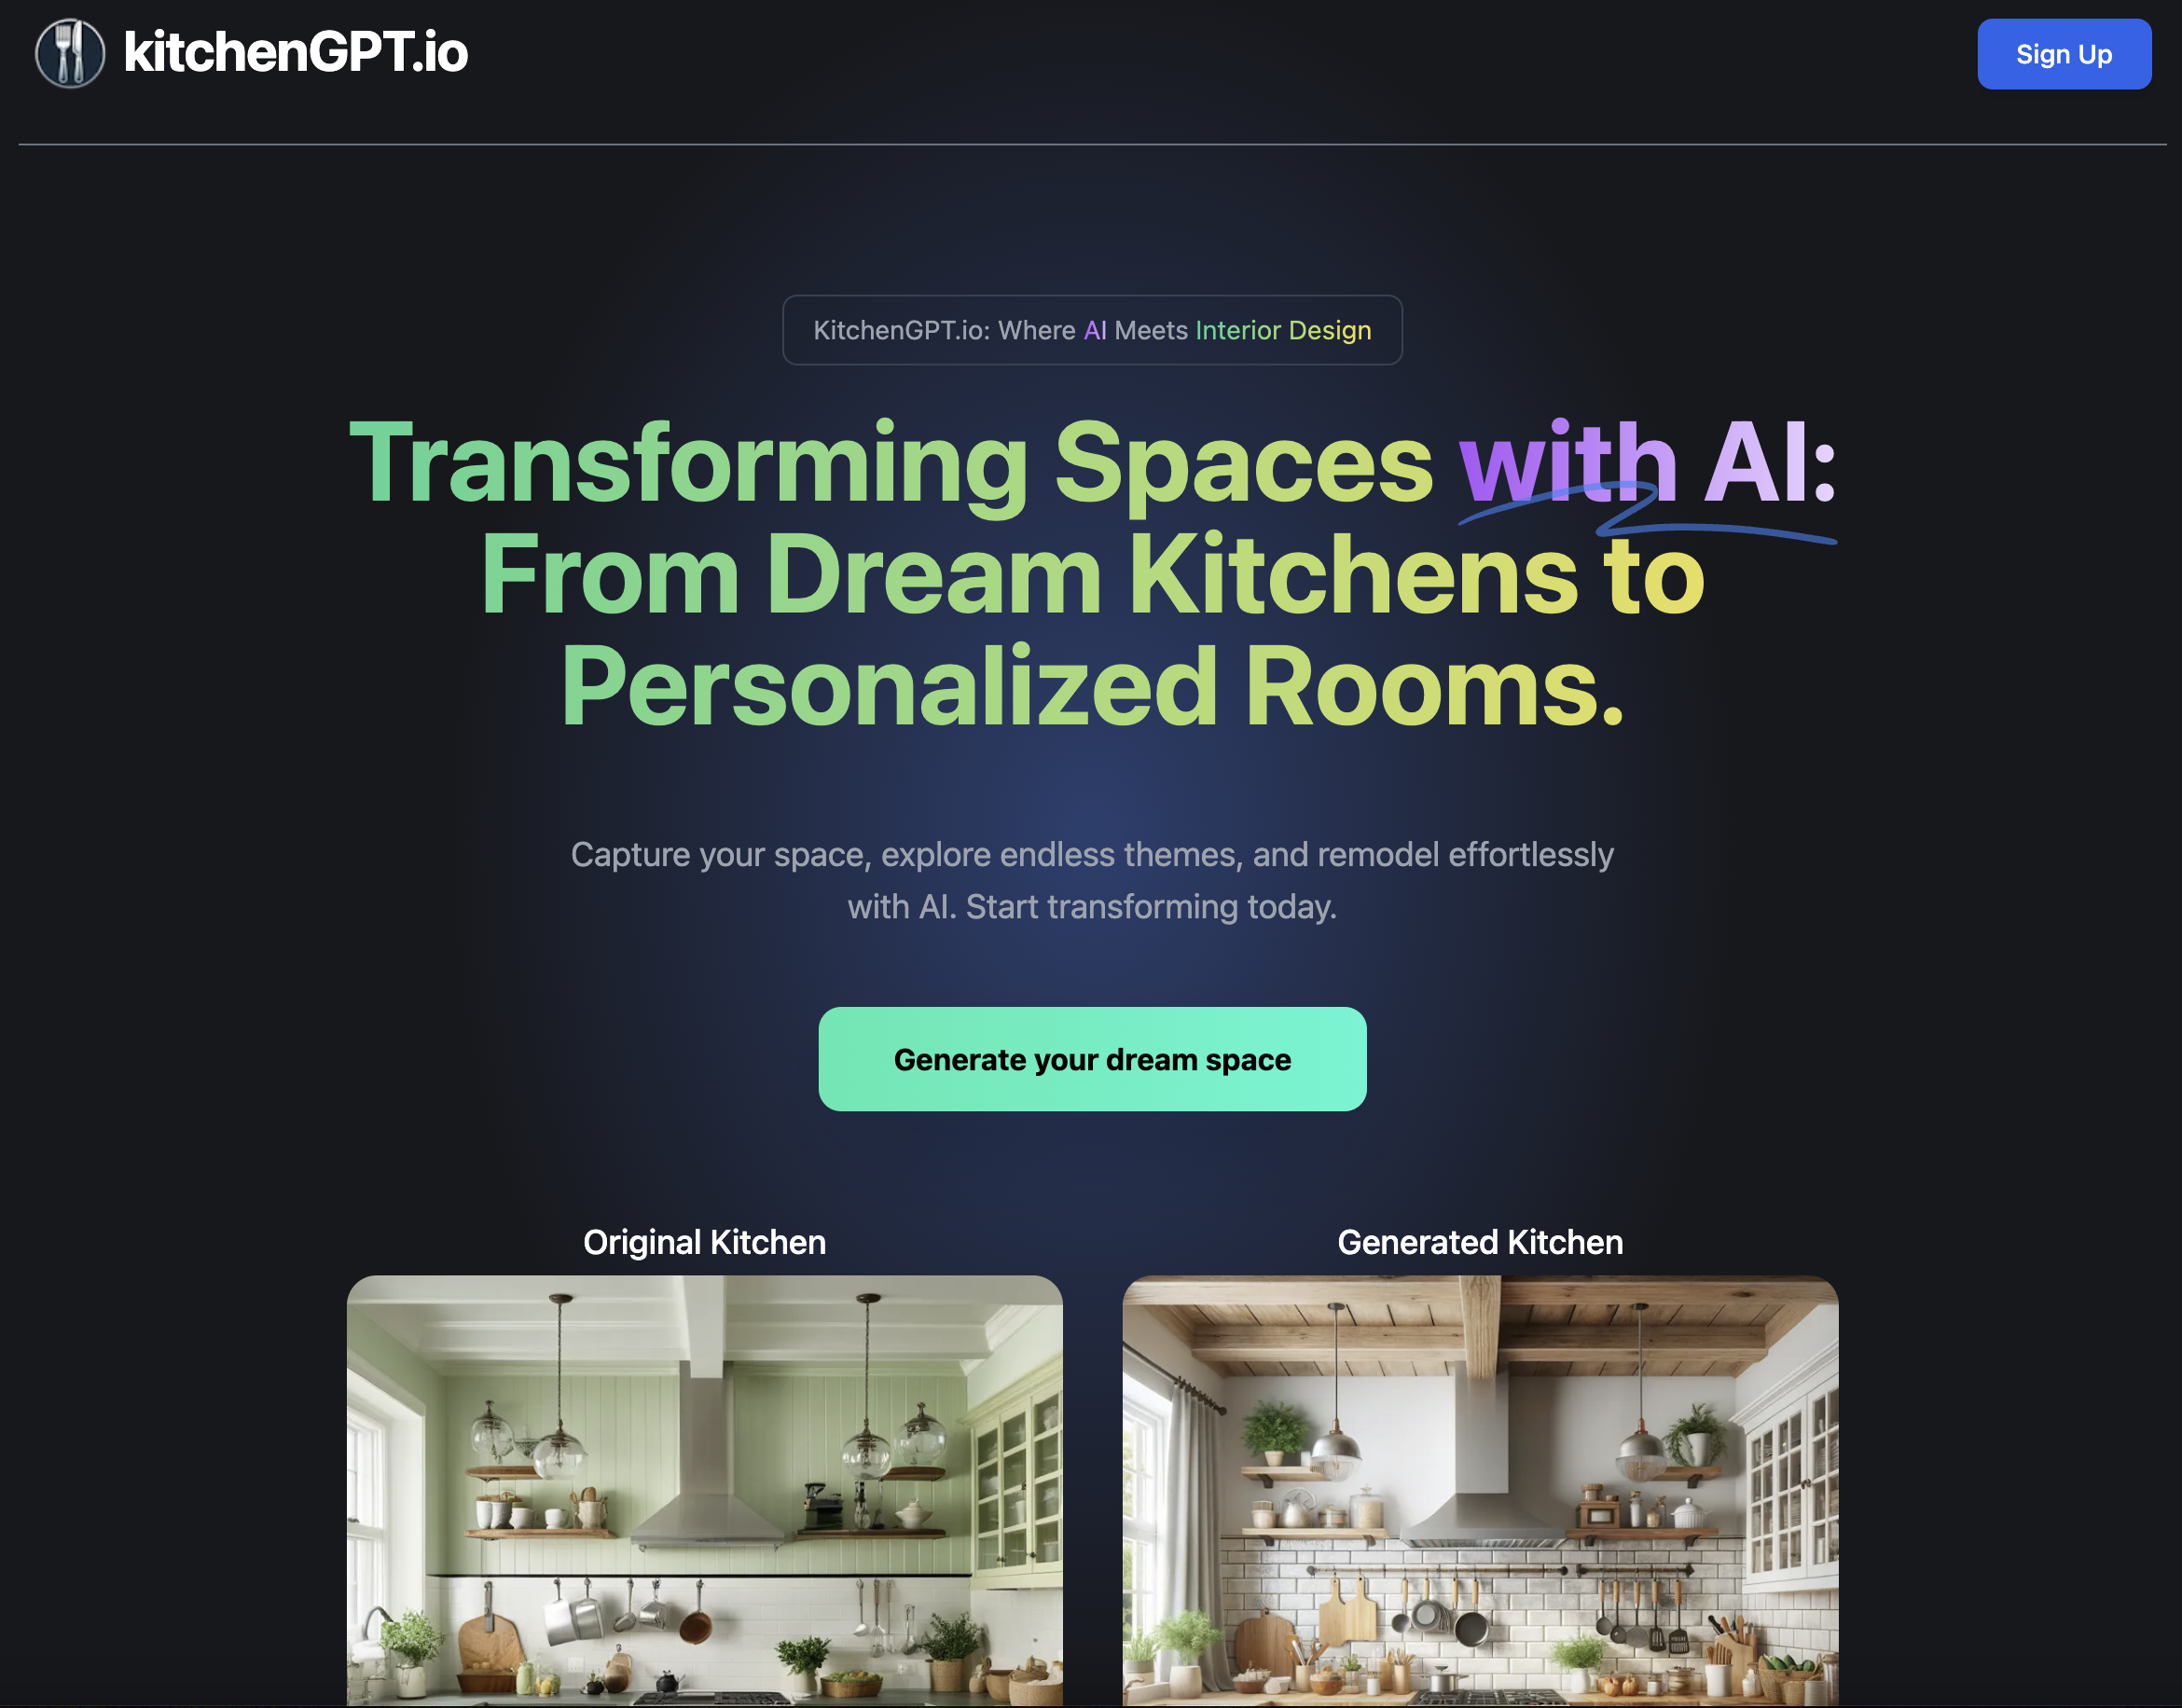 KitchenGPT.io Interior Designing using AI